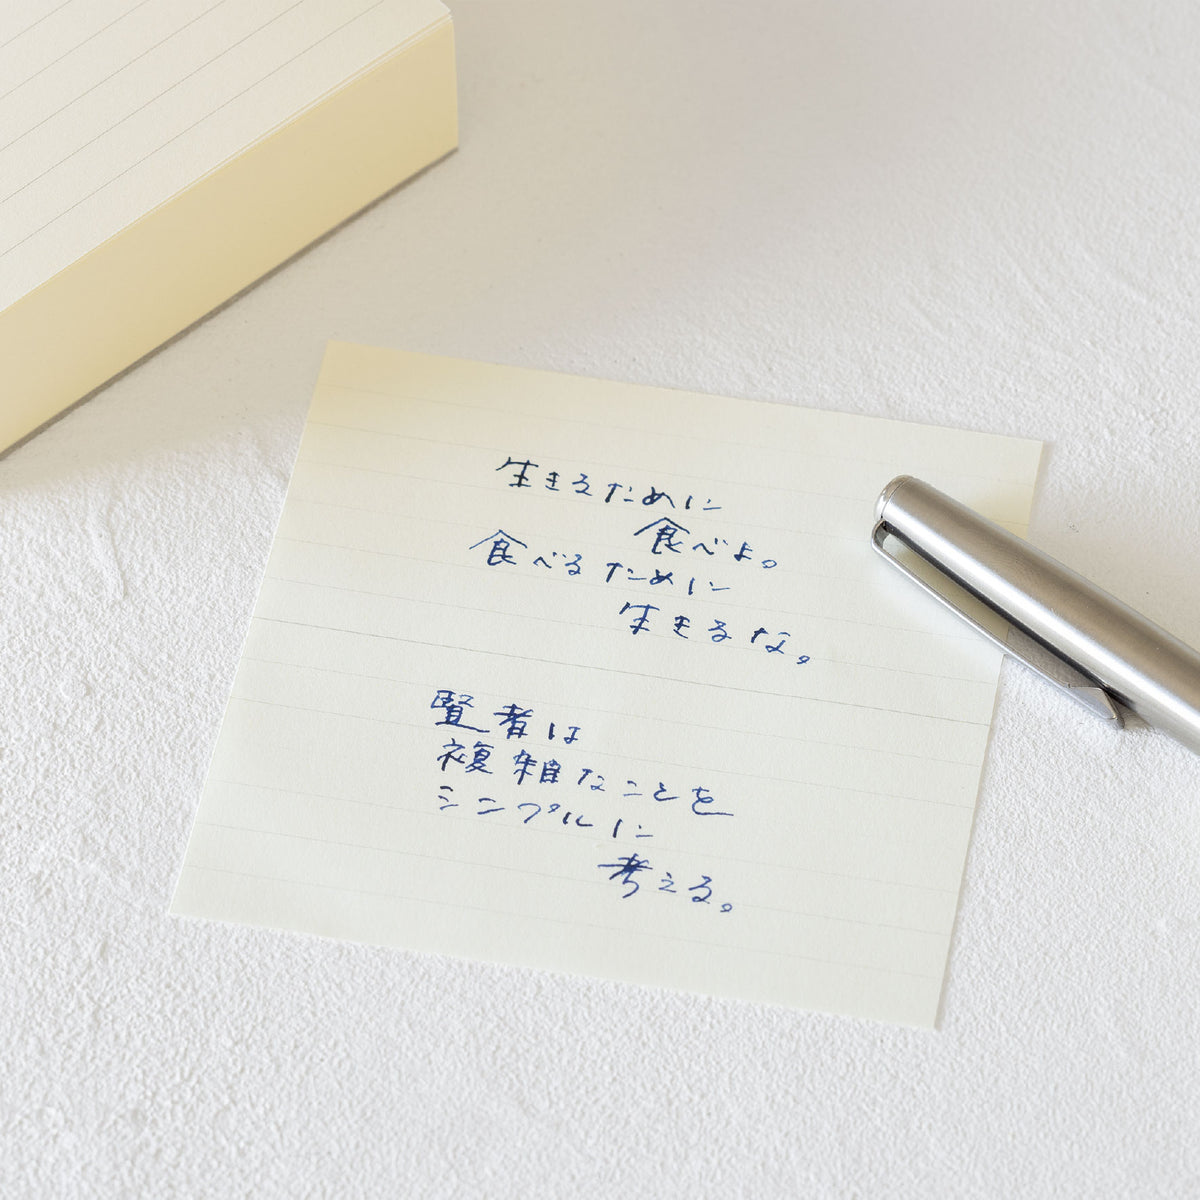 Midori - Notepad - Block Memo Pad - Lined